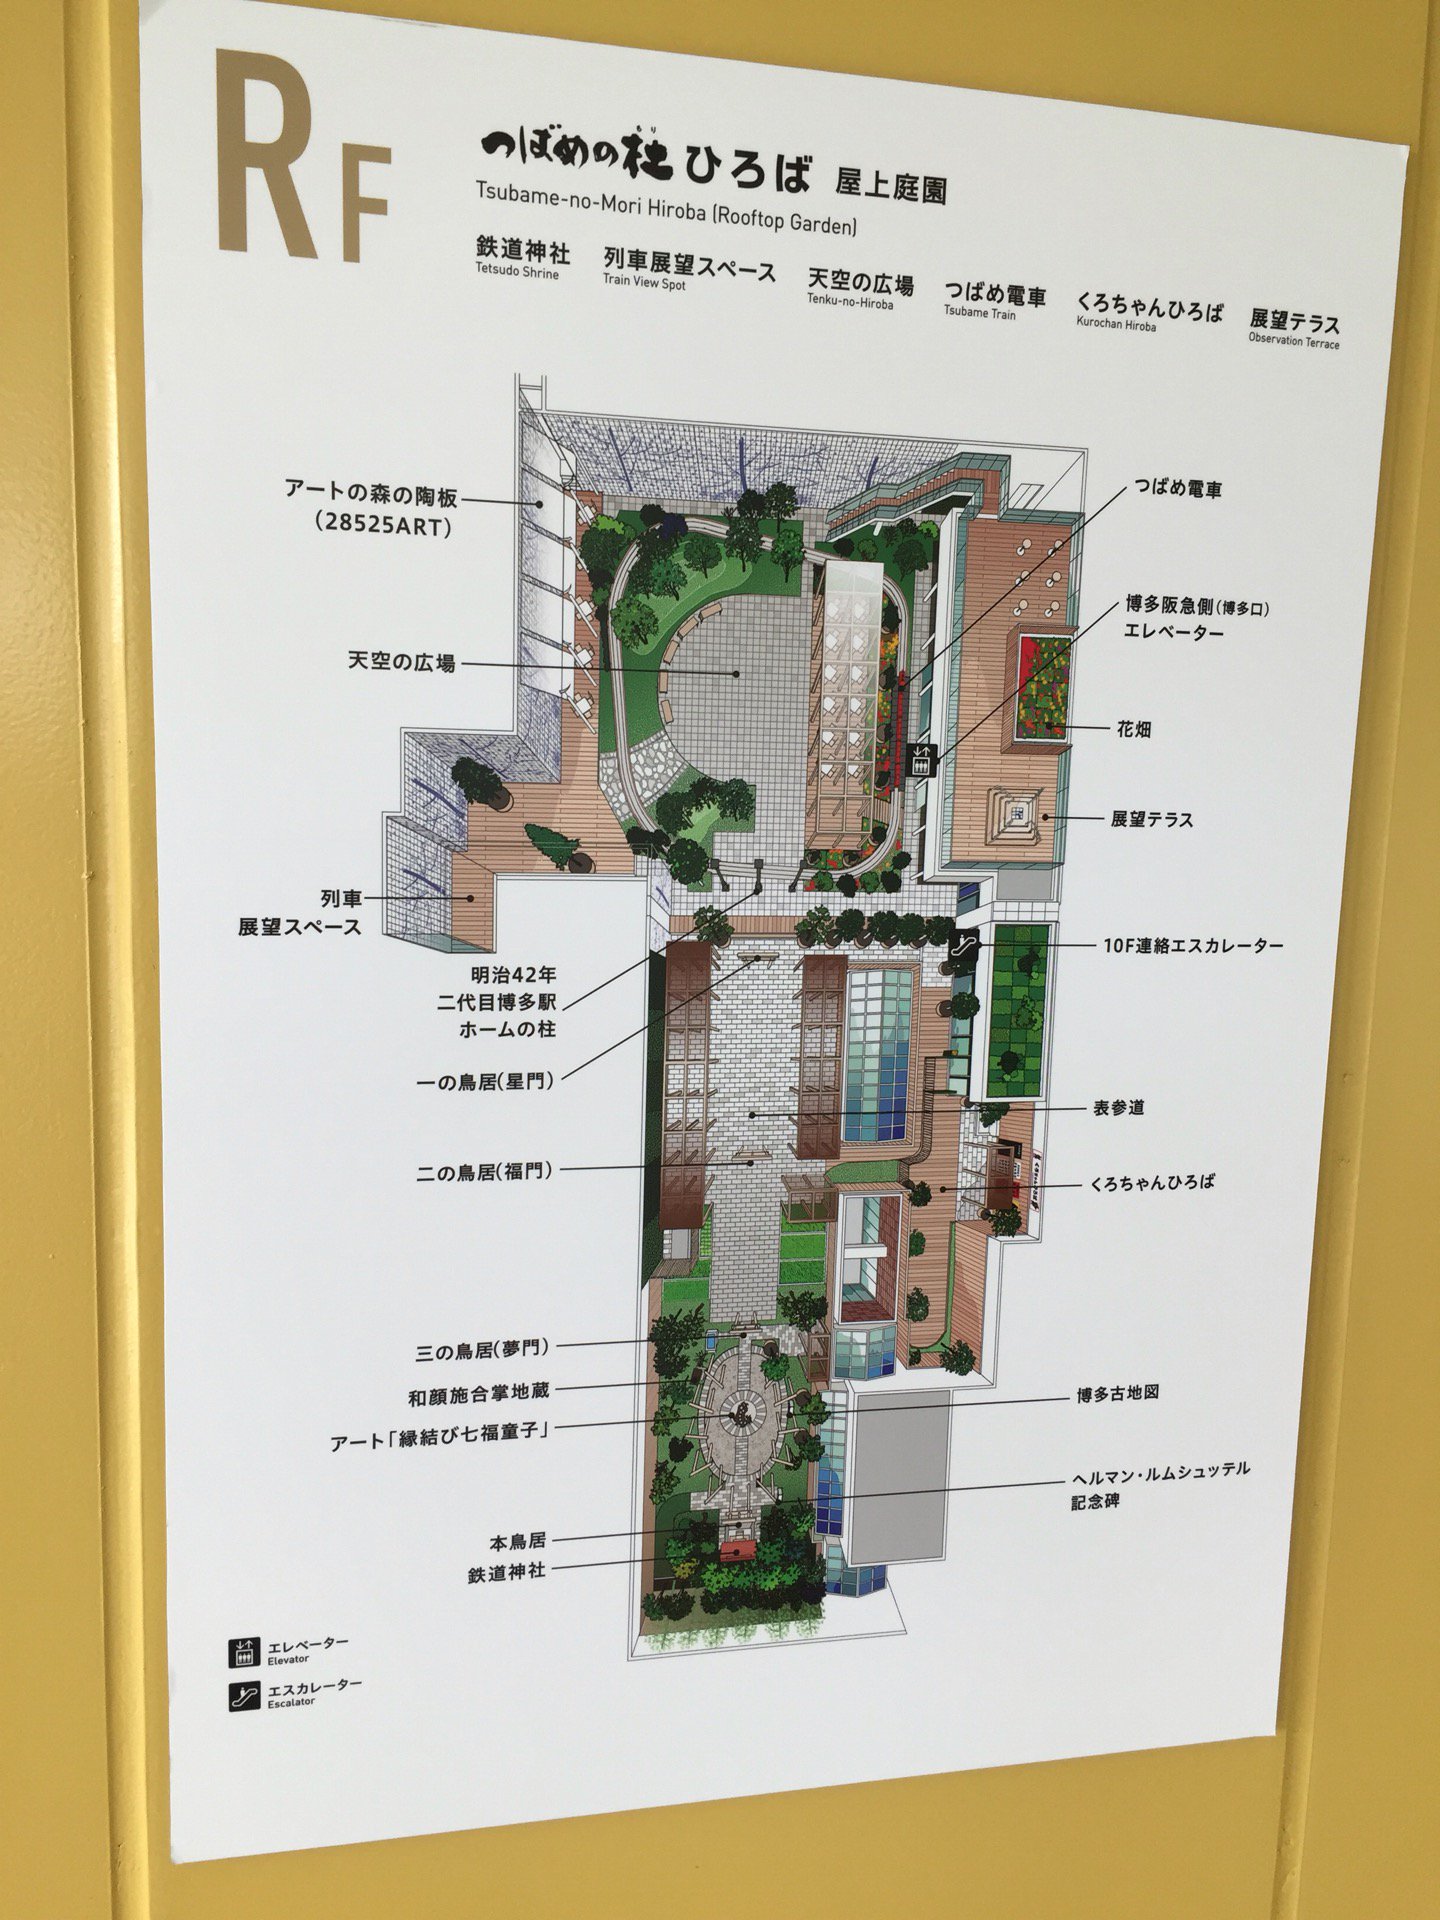 屋上庭園マップ。 (@ 屋上庭園 つばめの杜ひろば in 福岡市, 福岡県)  